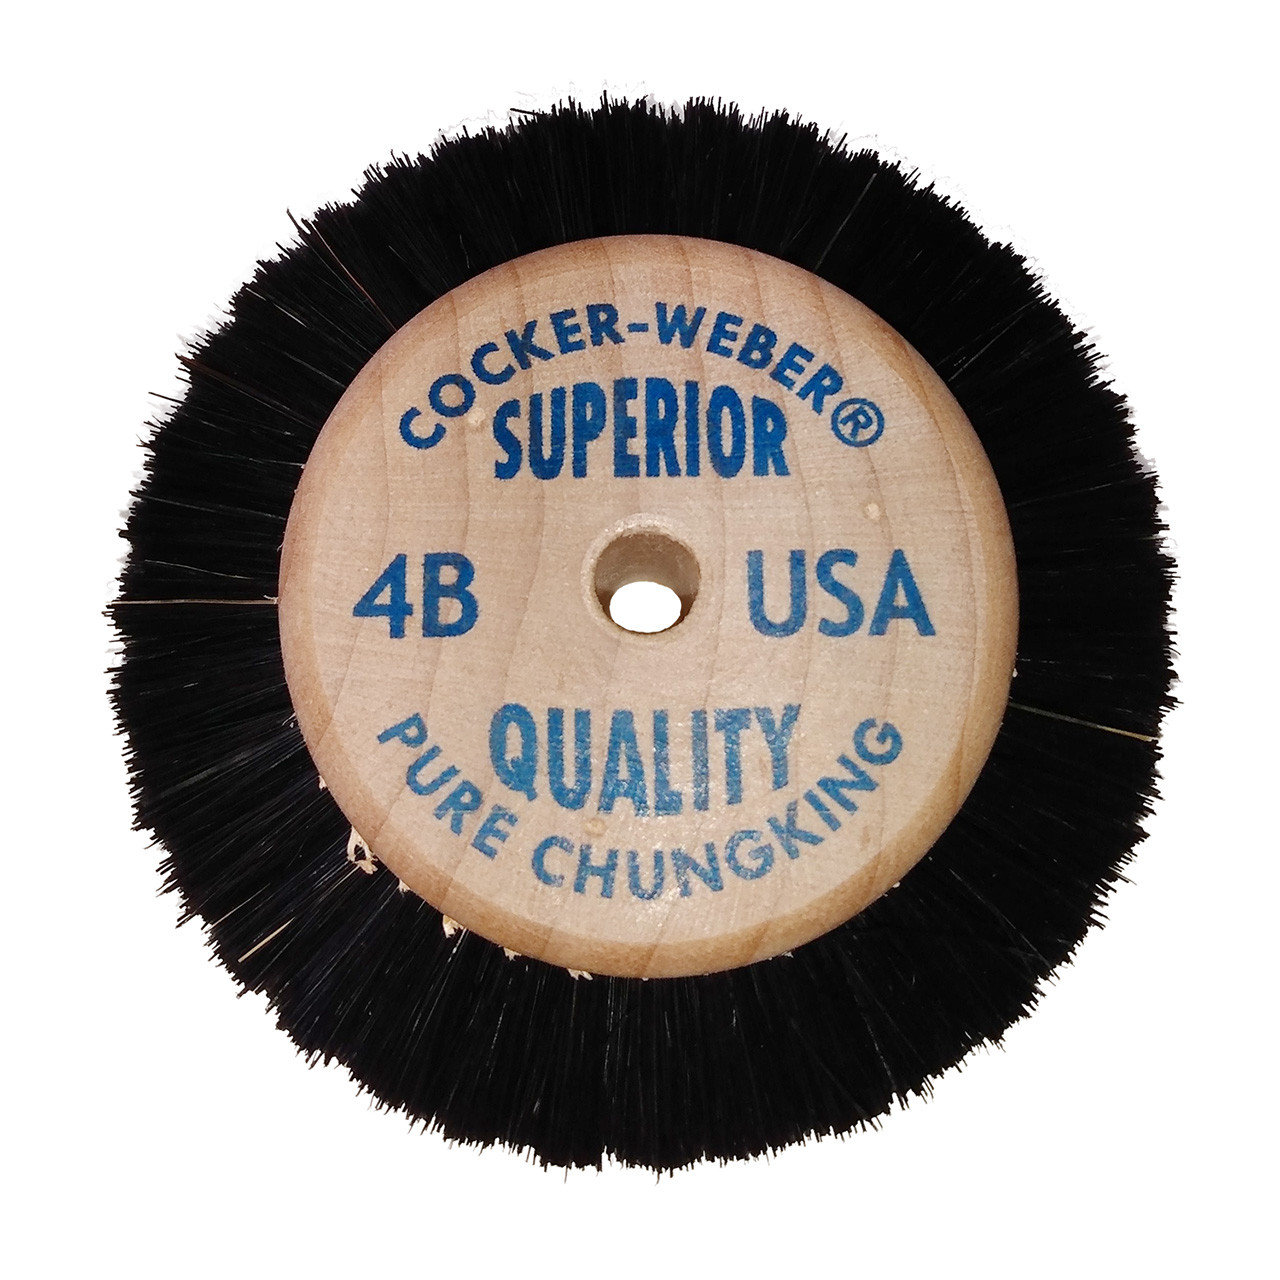 Cocker-Weber #4B SC Superior Wood Hub Wheel Brush